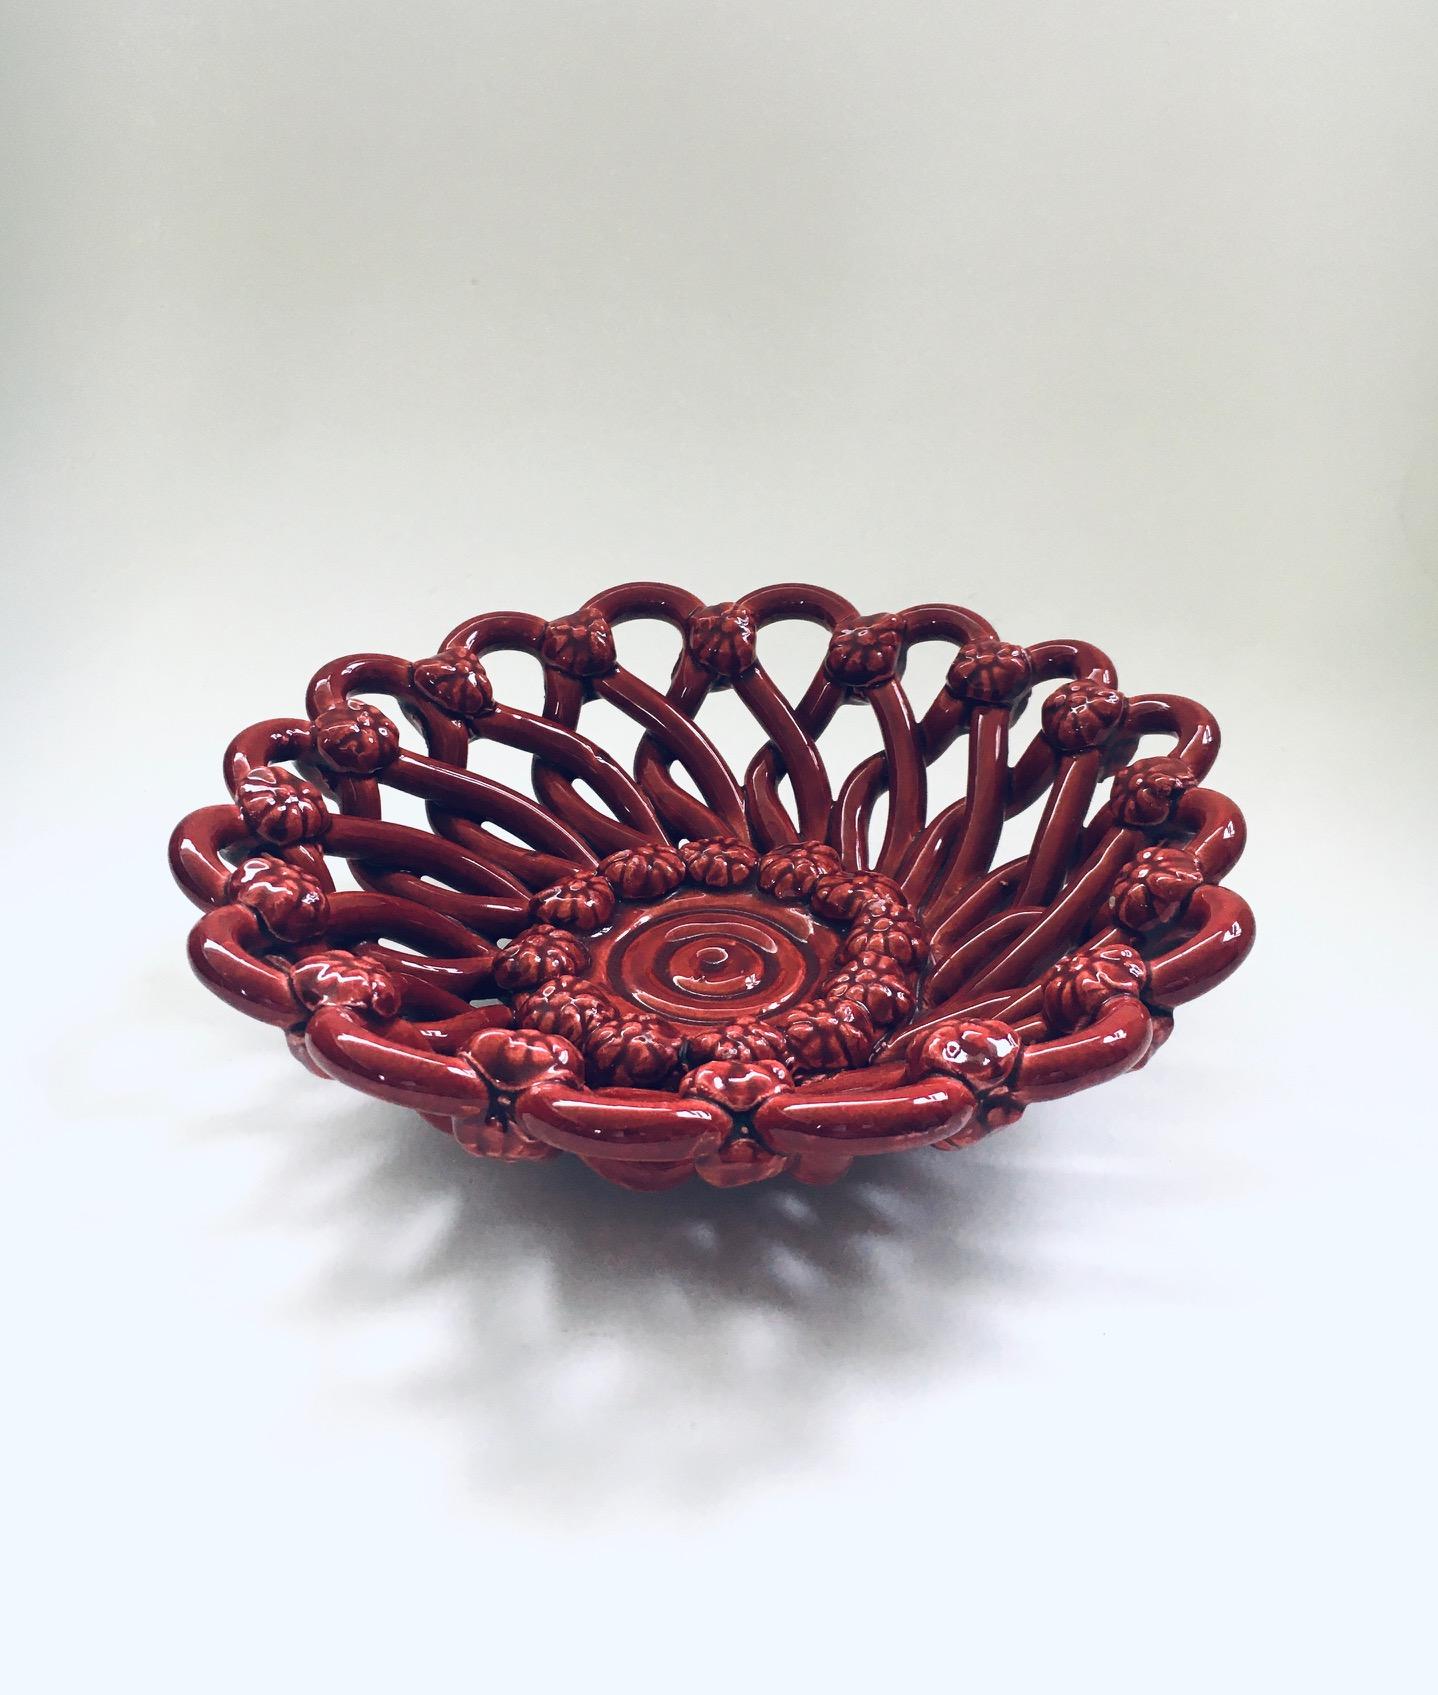 Vintage Midcentury Art Ceramics Basketweave Flower Bowl. Fabriqué en France, à Vallauris, dans les années 1950. Estampillé sur le fond. Bol en céramique tressée et émaillée de couleur rouge bordeaux. Très bon état. Dimensions : 7cm x 21,5cm x 21,5cm.